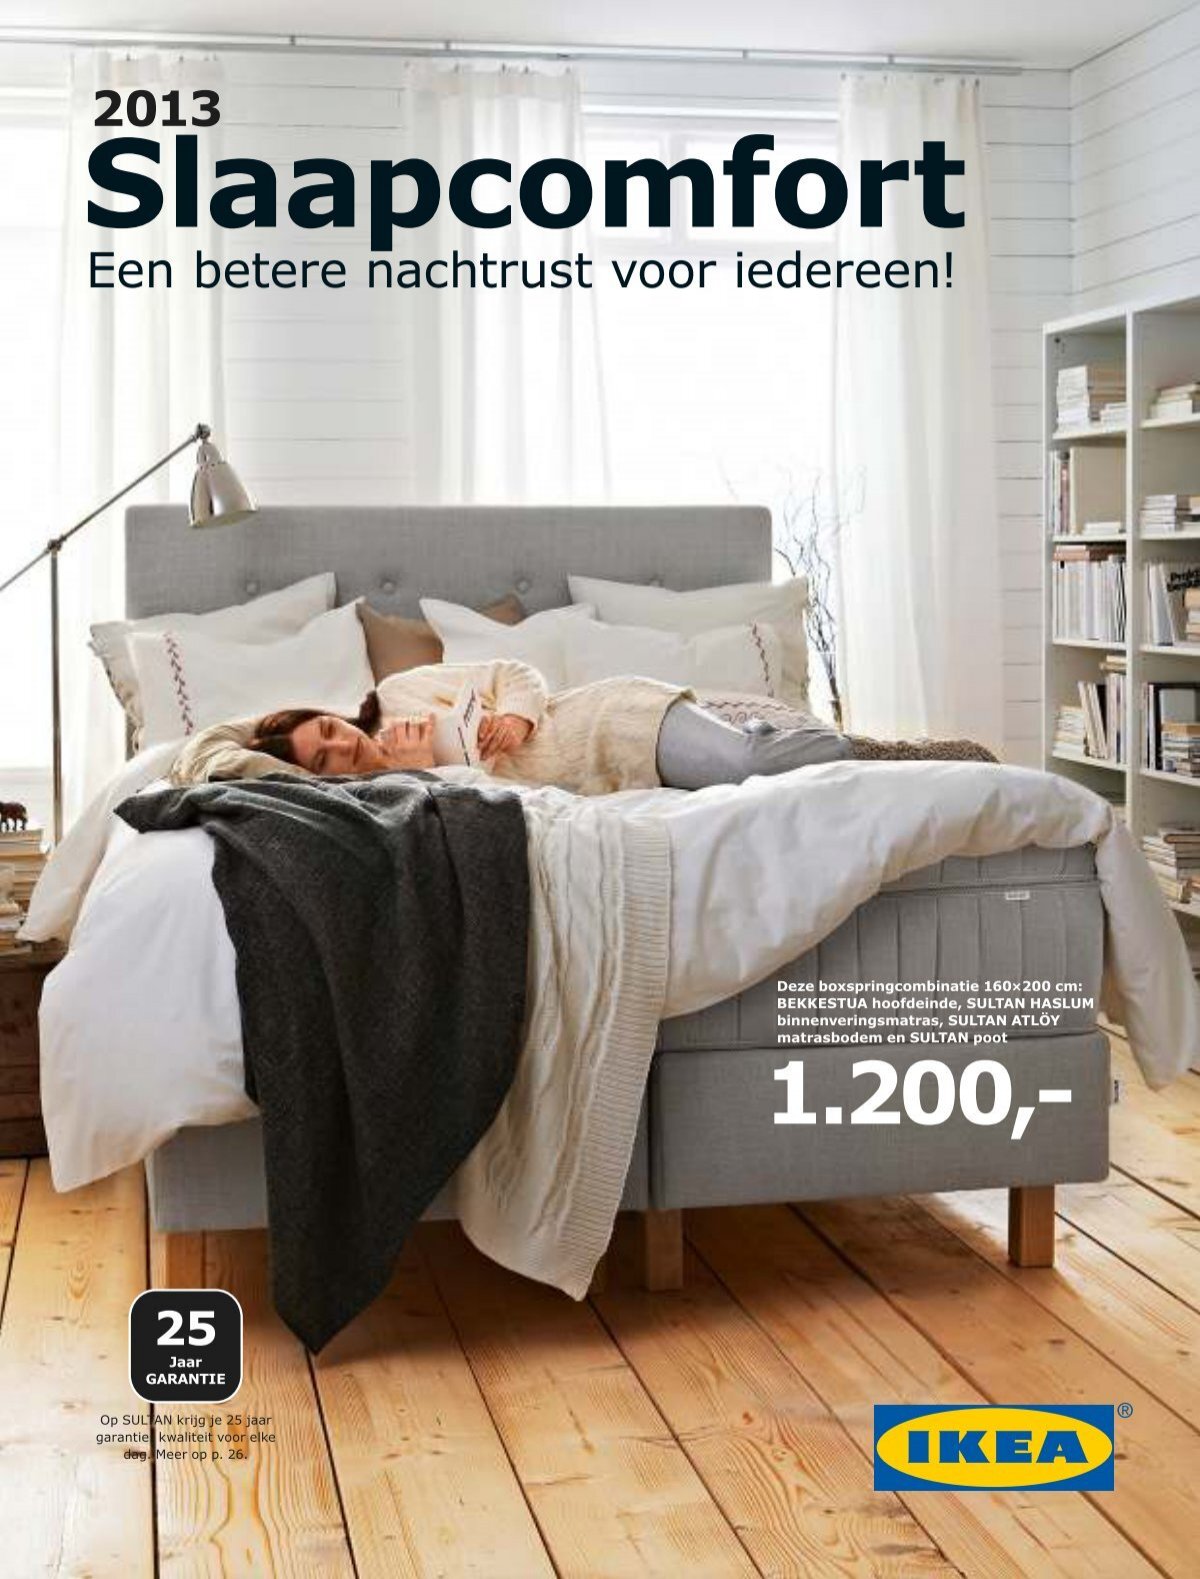 Andrew Halliday noot Uitputten IKEA Slaapcomfort 2013 NL